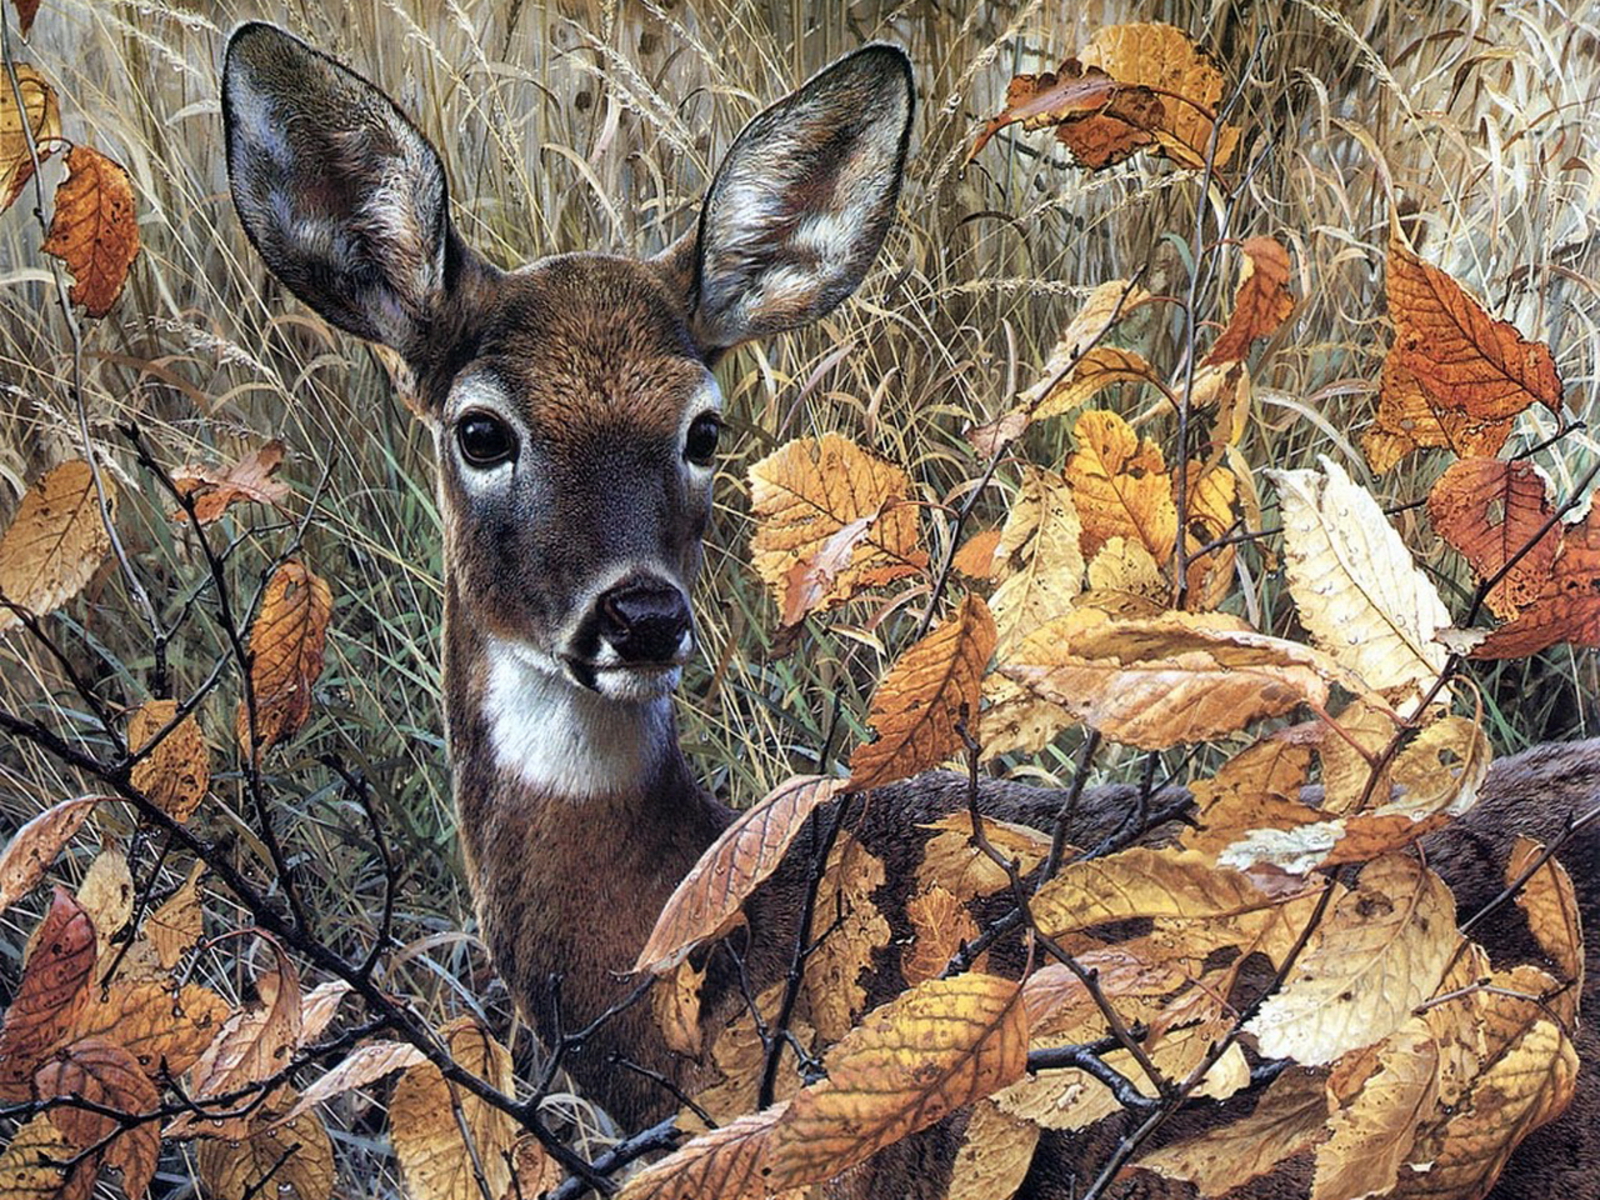  deer wallpaper for computerdeer pictures deer desktop wallpaperfree